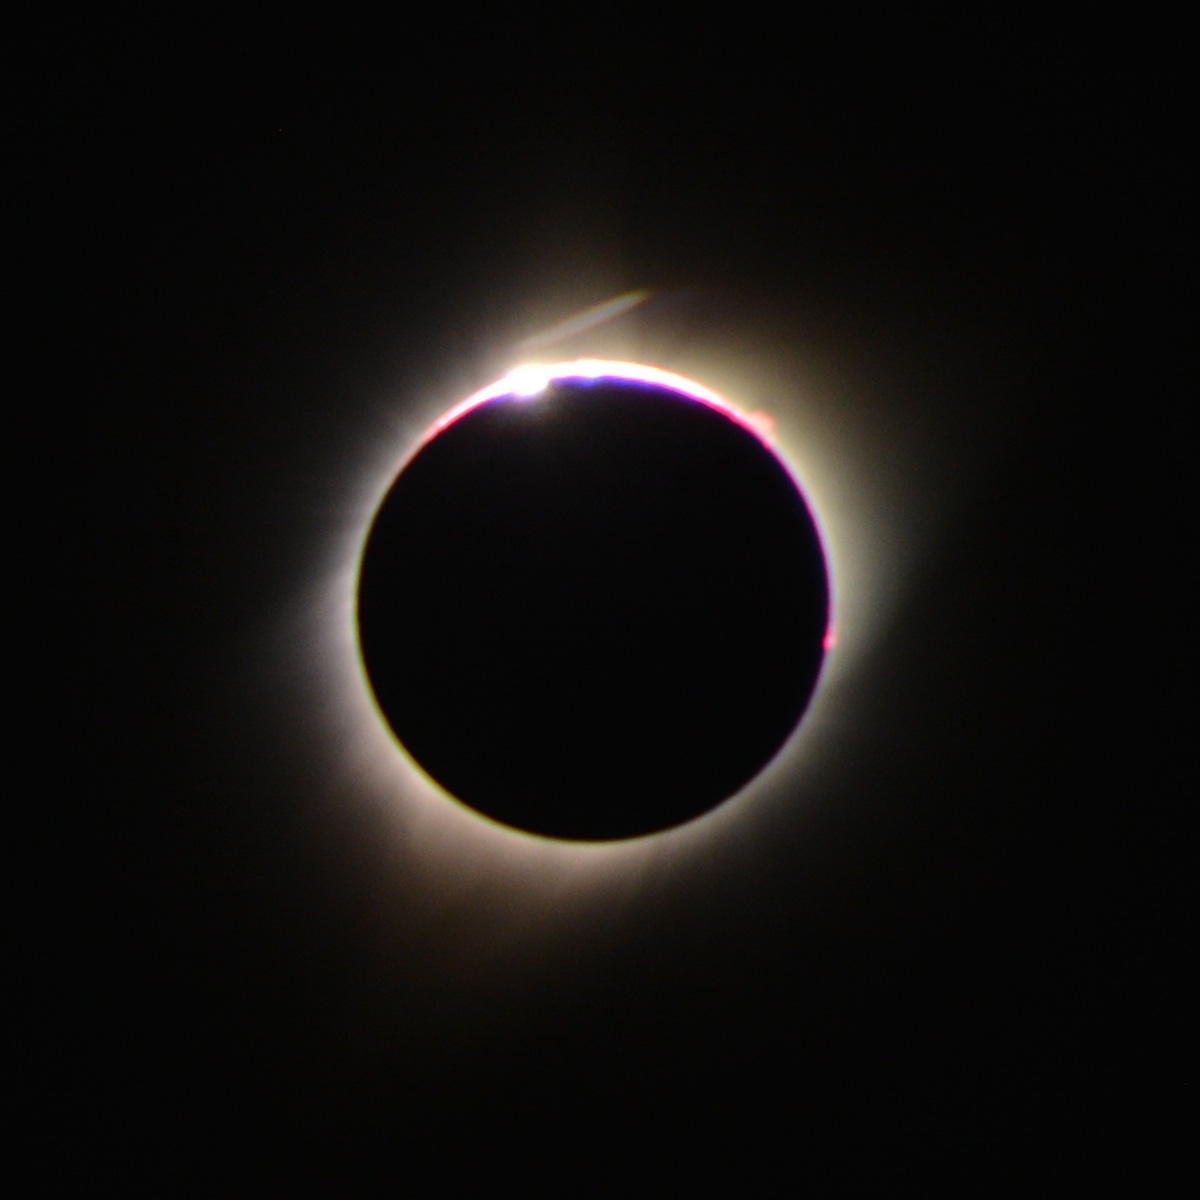 2017-08-21, 035, Eclipse, Ashton, ID